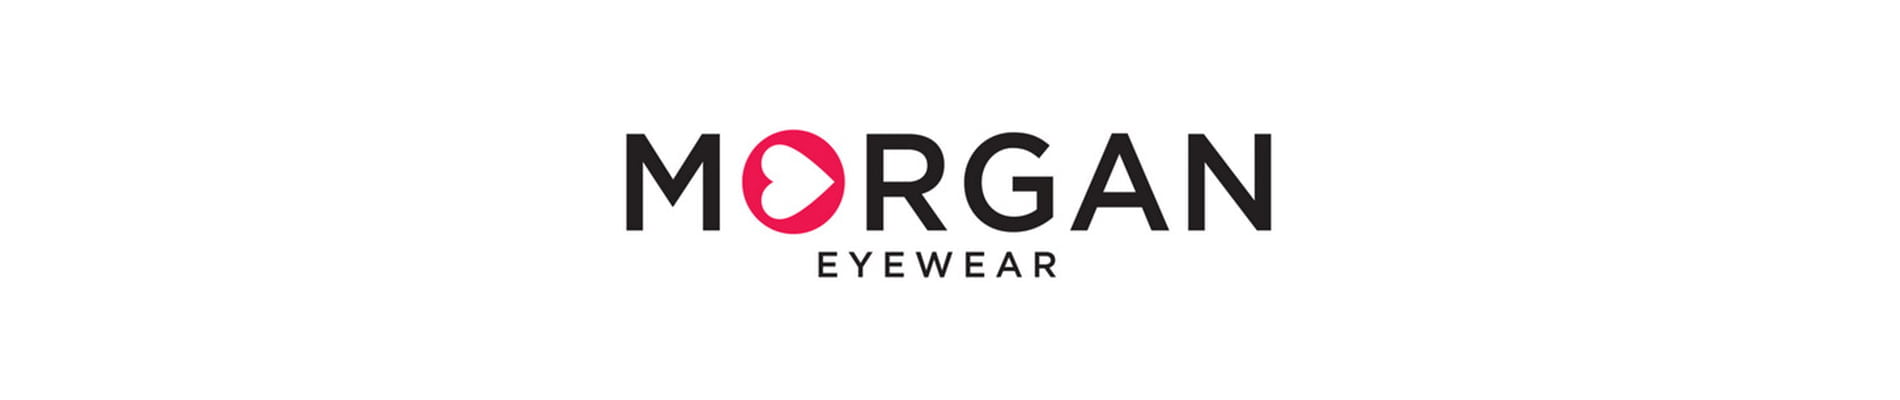 morgan eyewear designer frames header